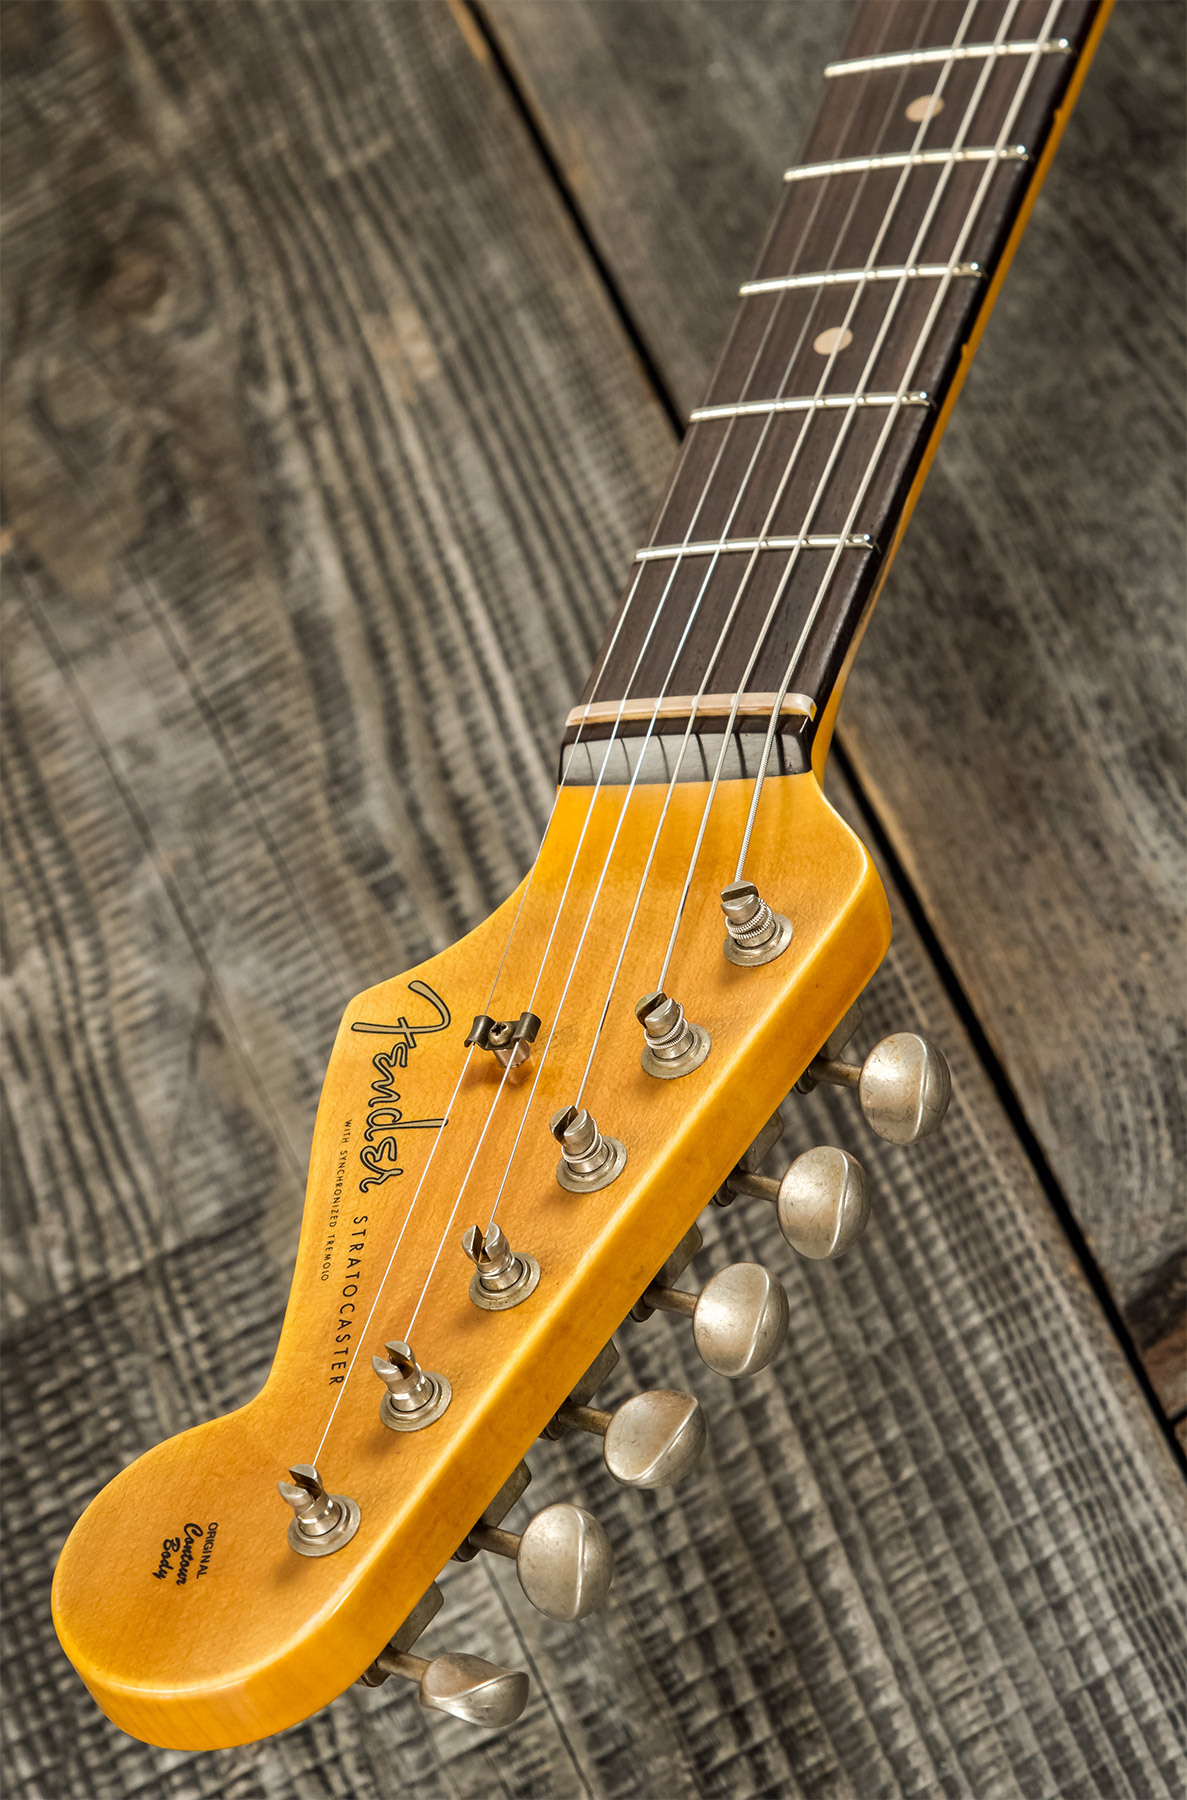 Fender Custom Shop Strat 1959 3s Trem Rw #r117661 - Relic 2-color Sunburst - Str shape electric guitar - Variation 9